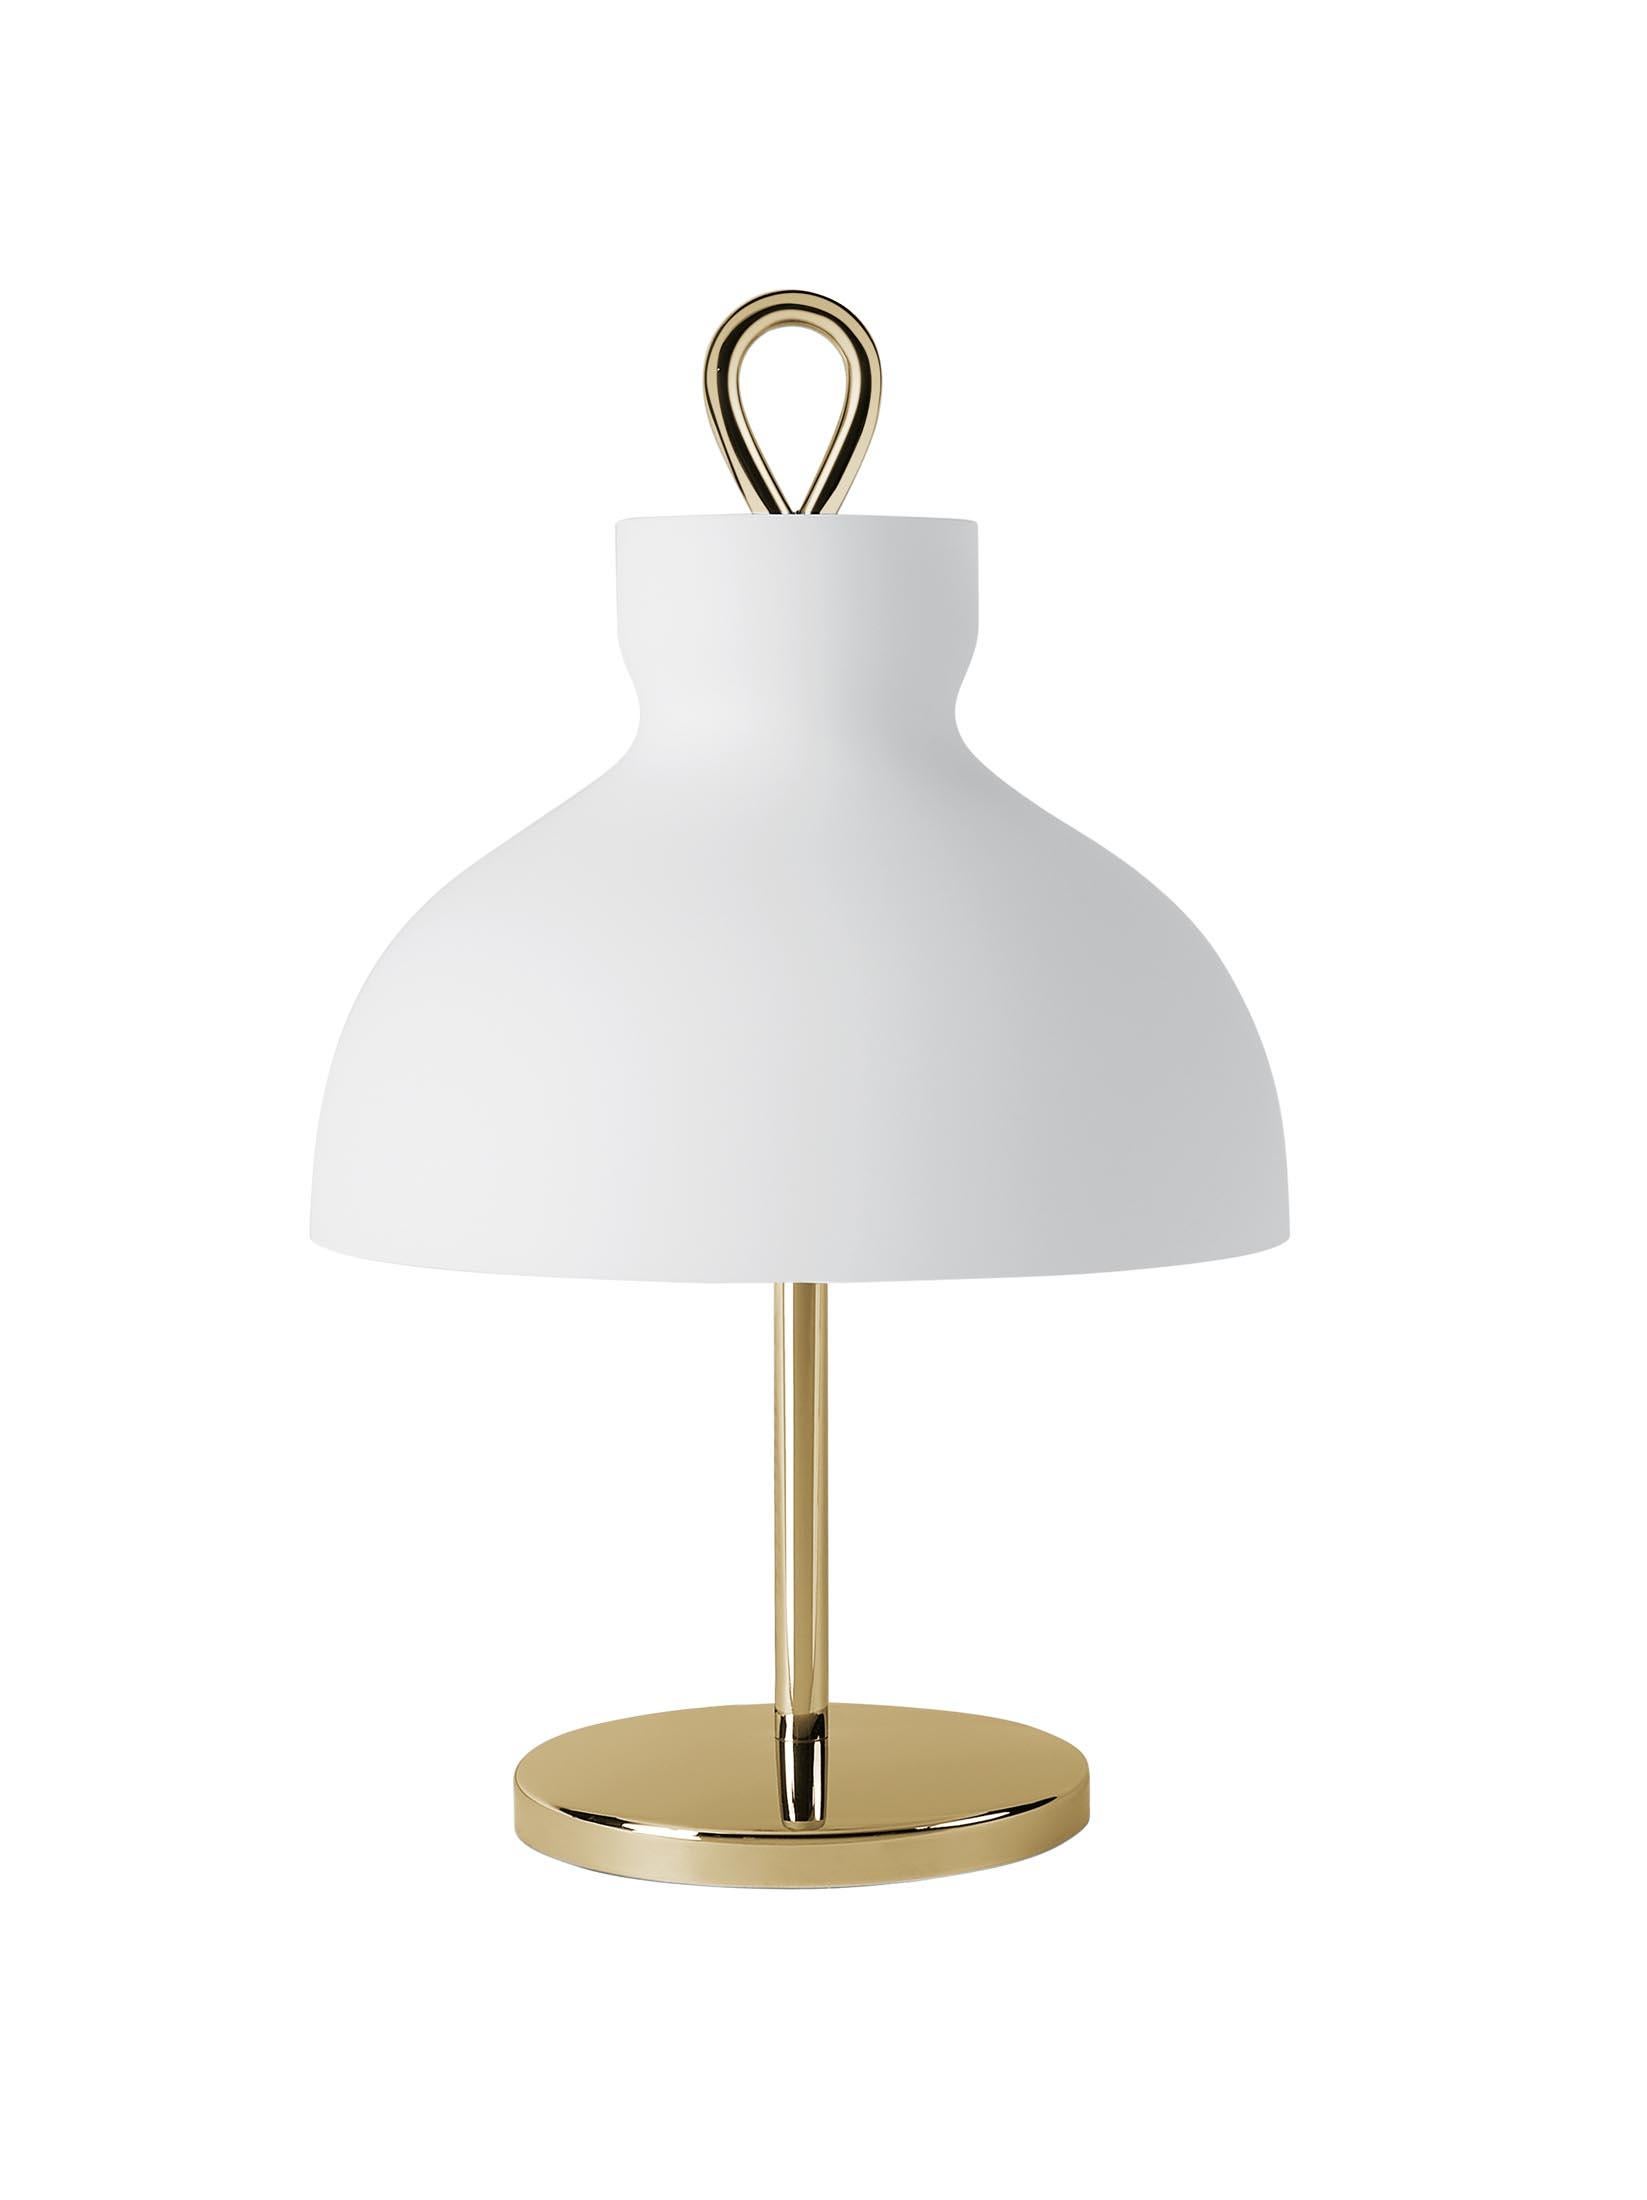 Ignazio Gardella 'Arenzano Bassa' Table Lamp in Glass and Satin Bronze For Sale 2